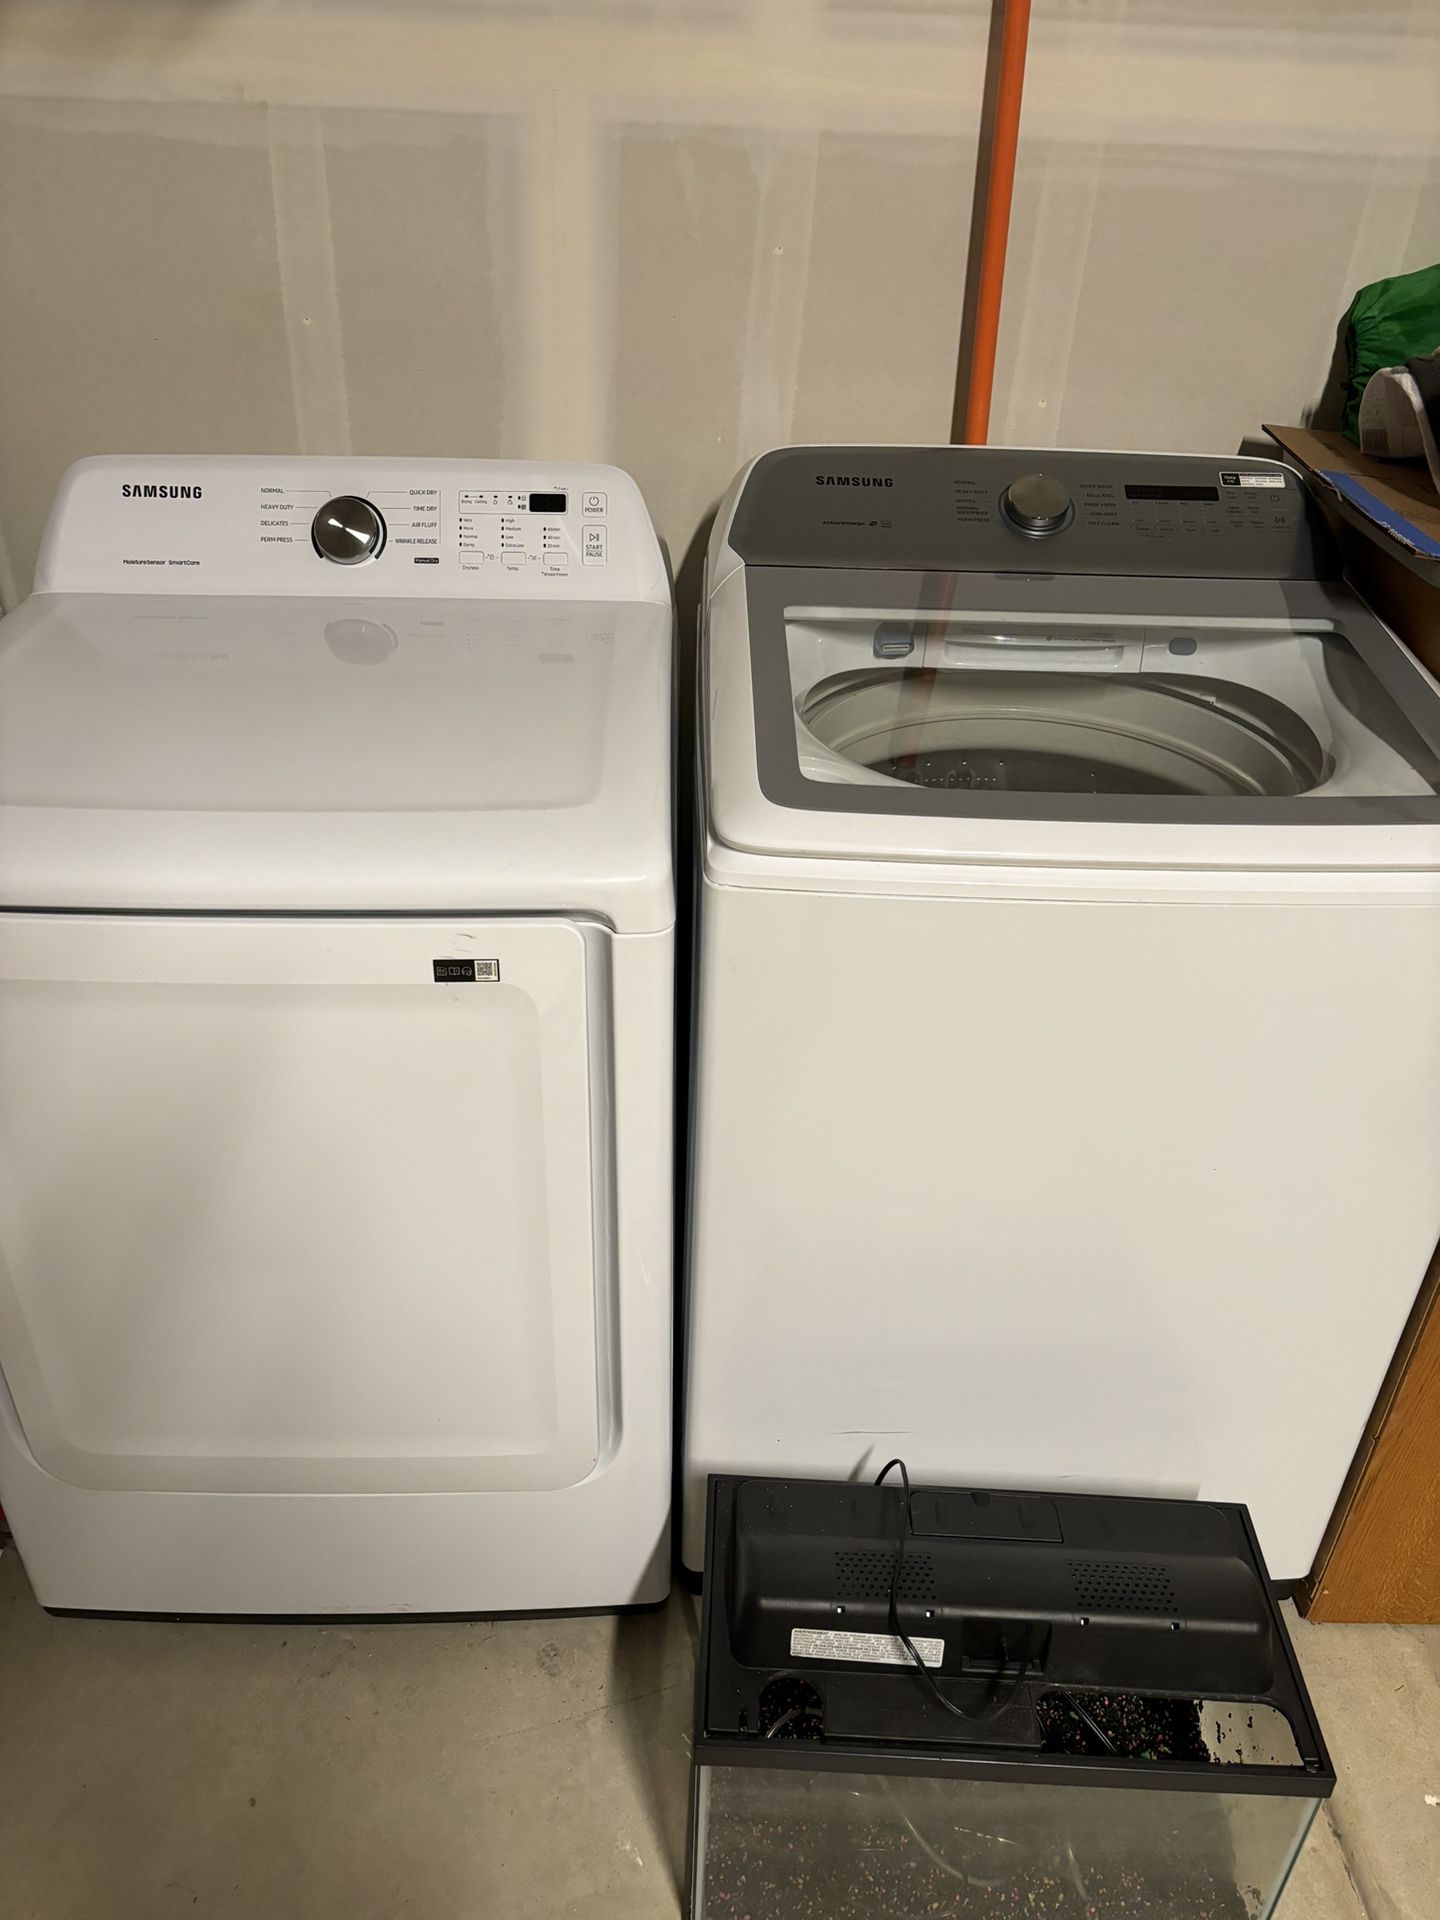 Samsung Smart Washer & Dryer Set